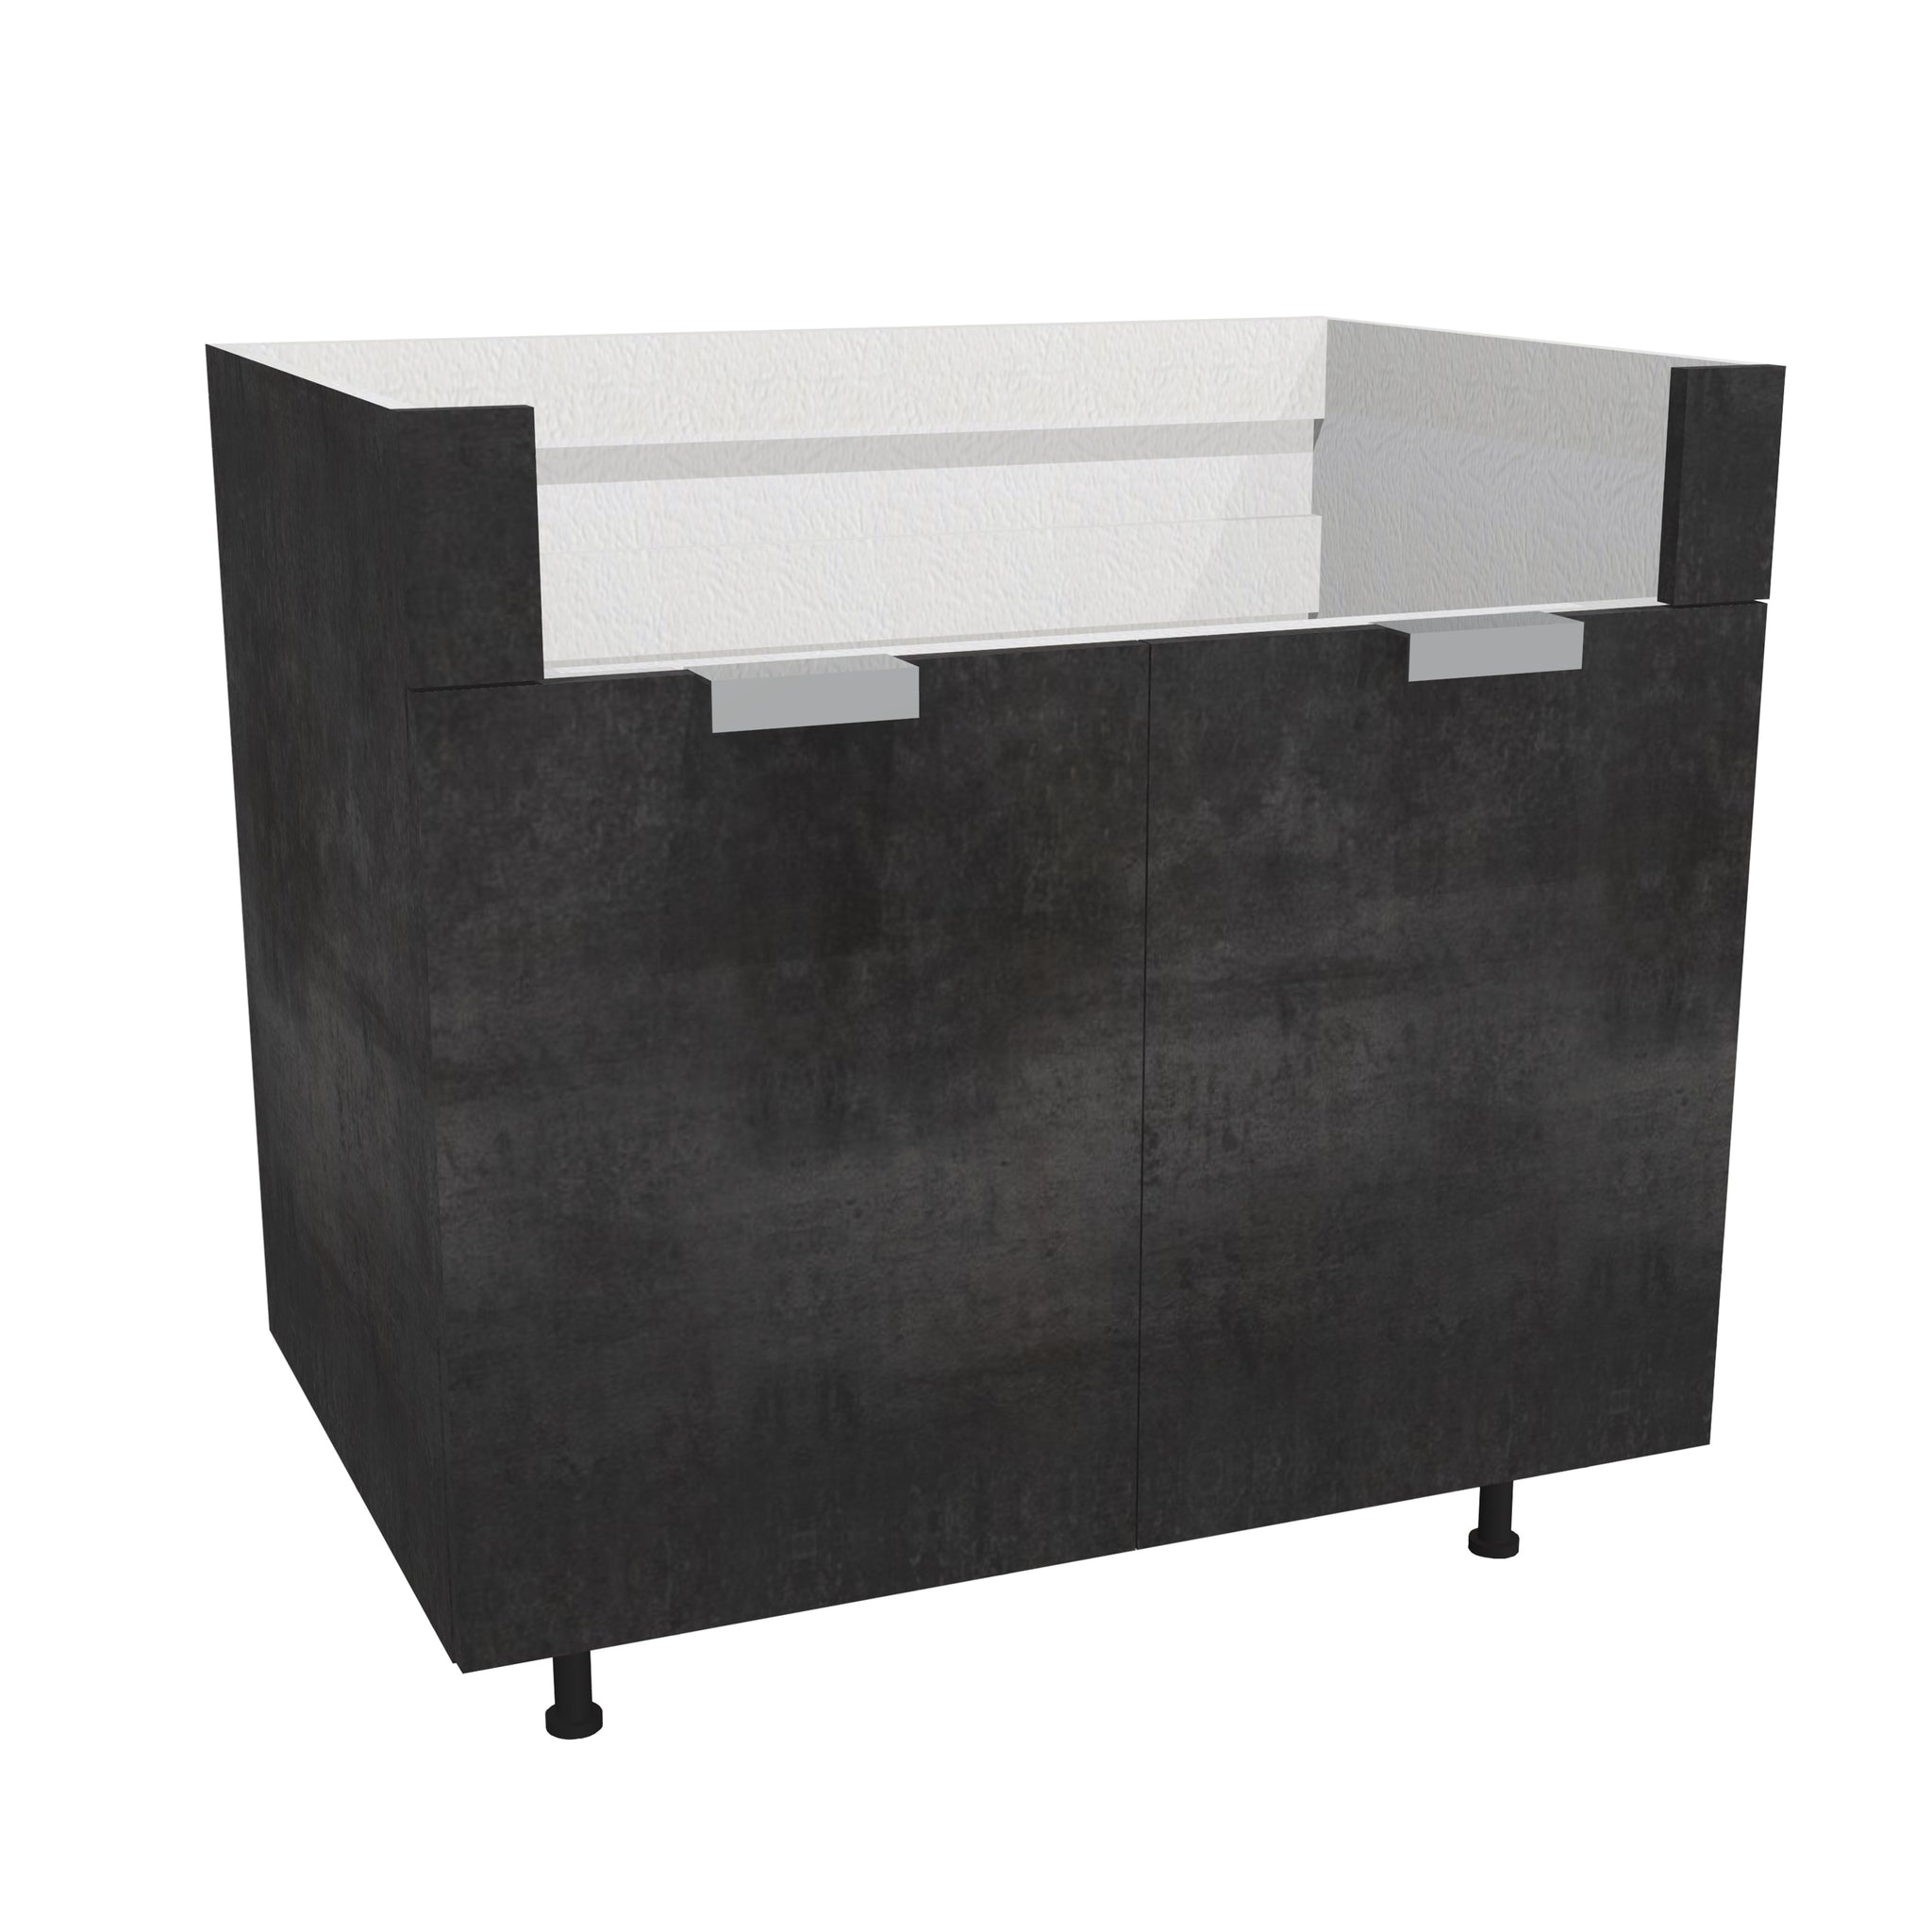 RTA - Rustic Grey - Farm Sink Base Cabinet | 36"W x 34.5"H x 24"D